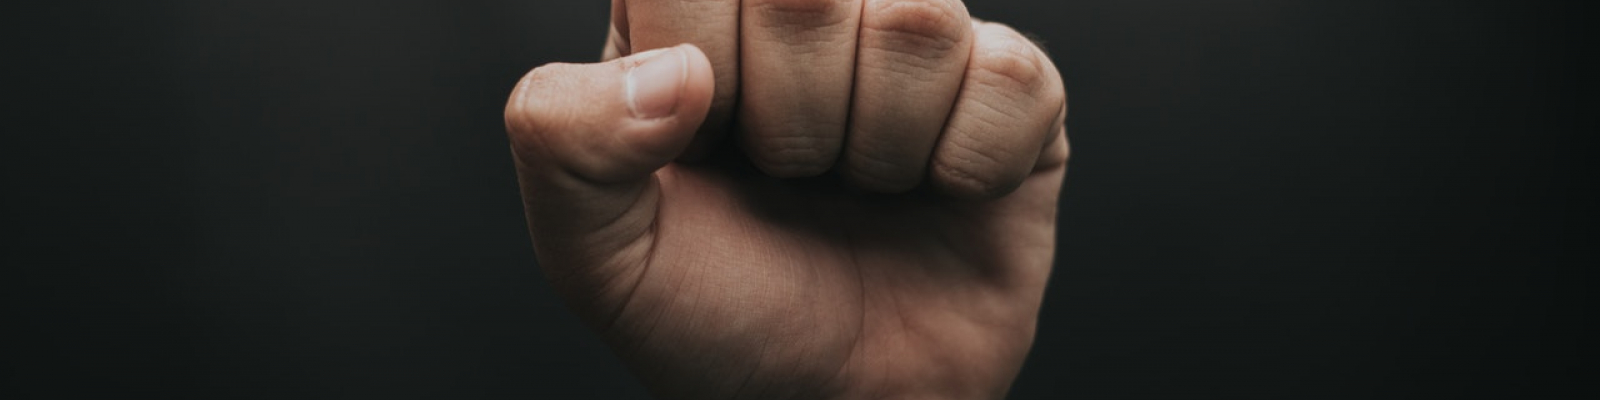 A person's fist